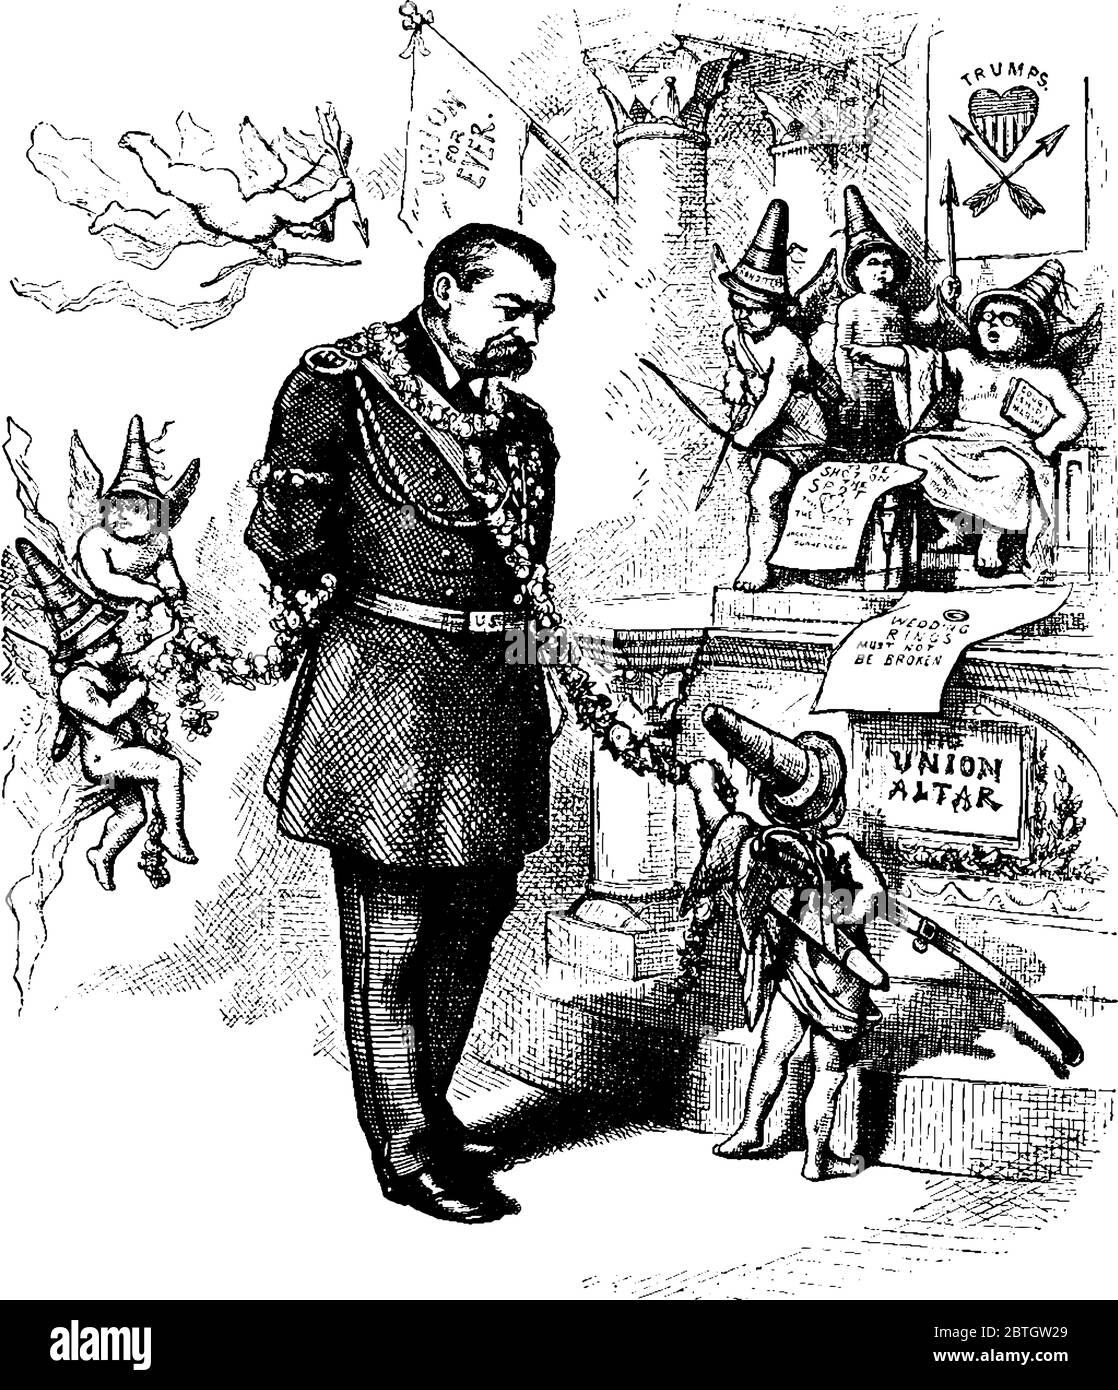 Nast's Karikatur, die General Phil Sheridan's zeigt, war er ein Union General im amerikanischen Bürgerkrieg., Vintage-Linie Zeichnung oder Gravur Illustration. Stock Vektor